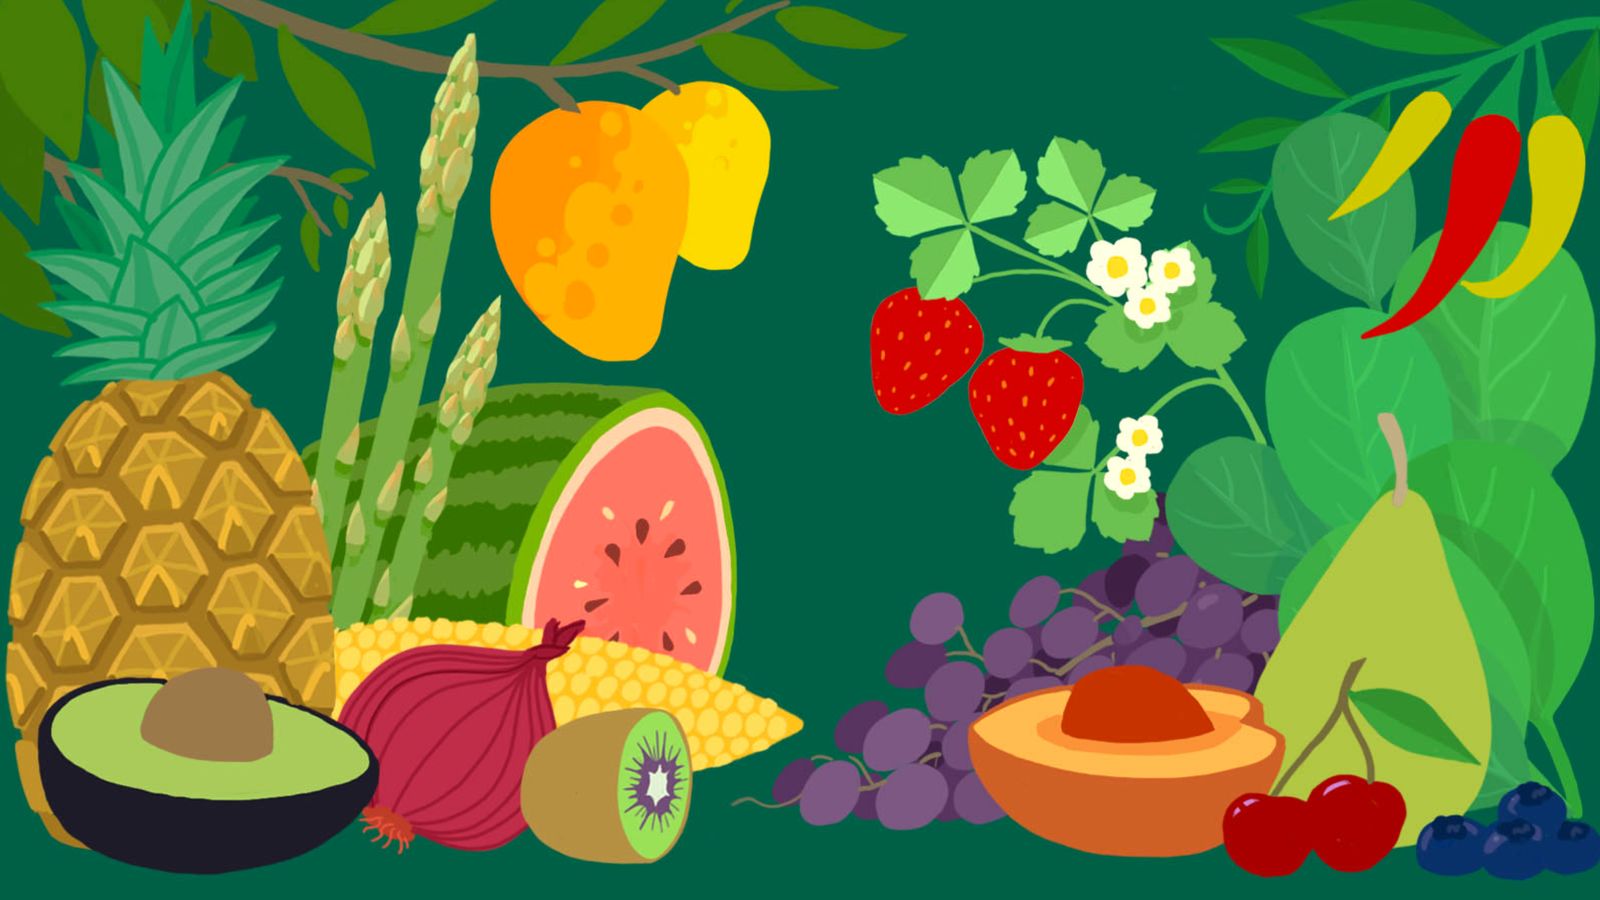 Fruit + Veggie Cleaner - The Home Farm